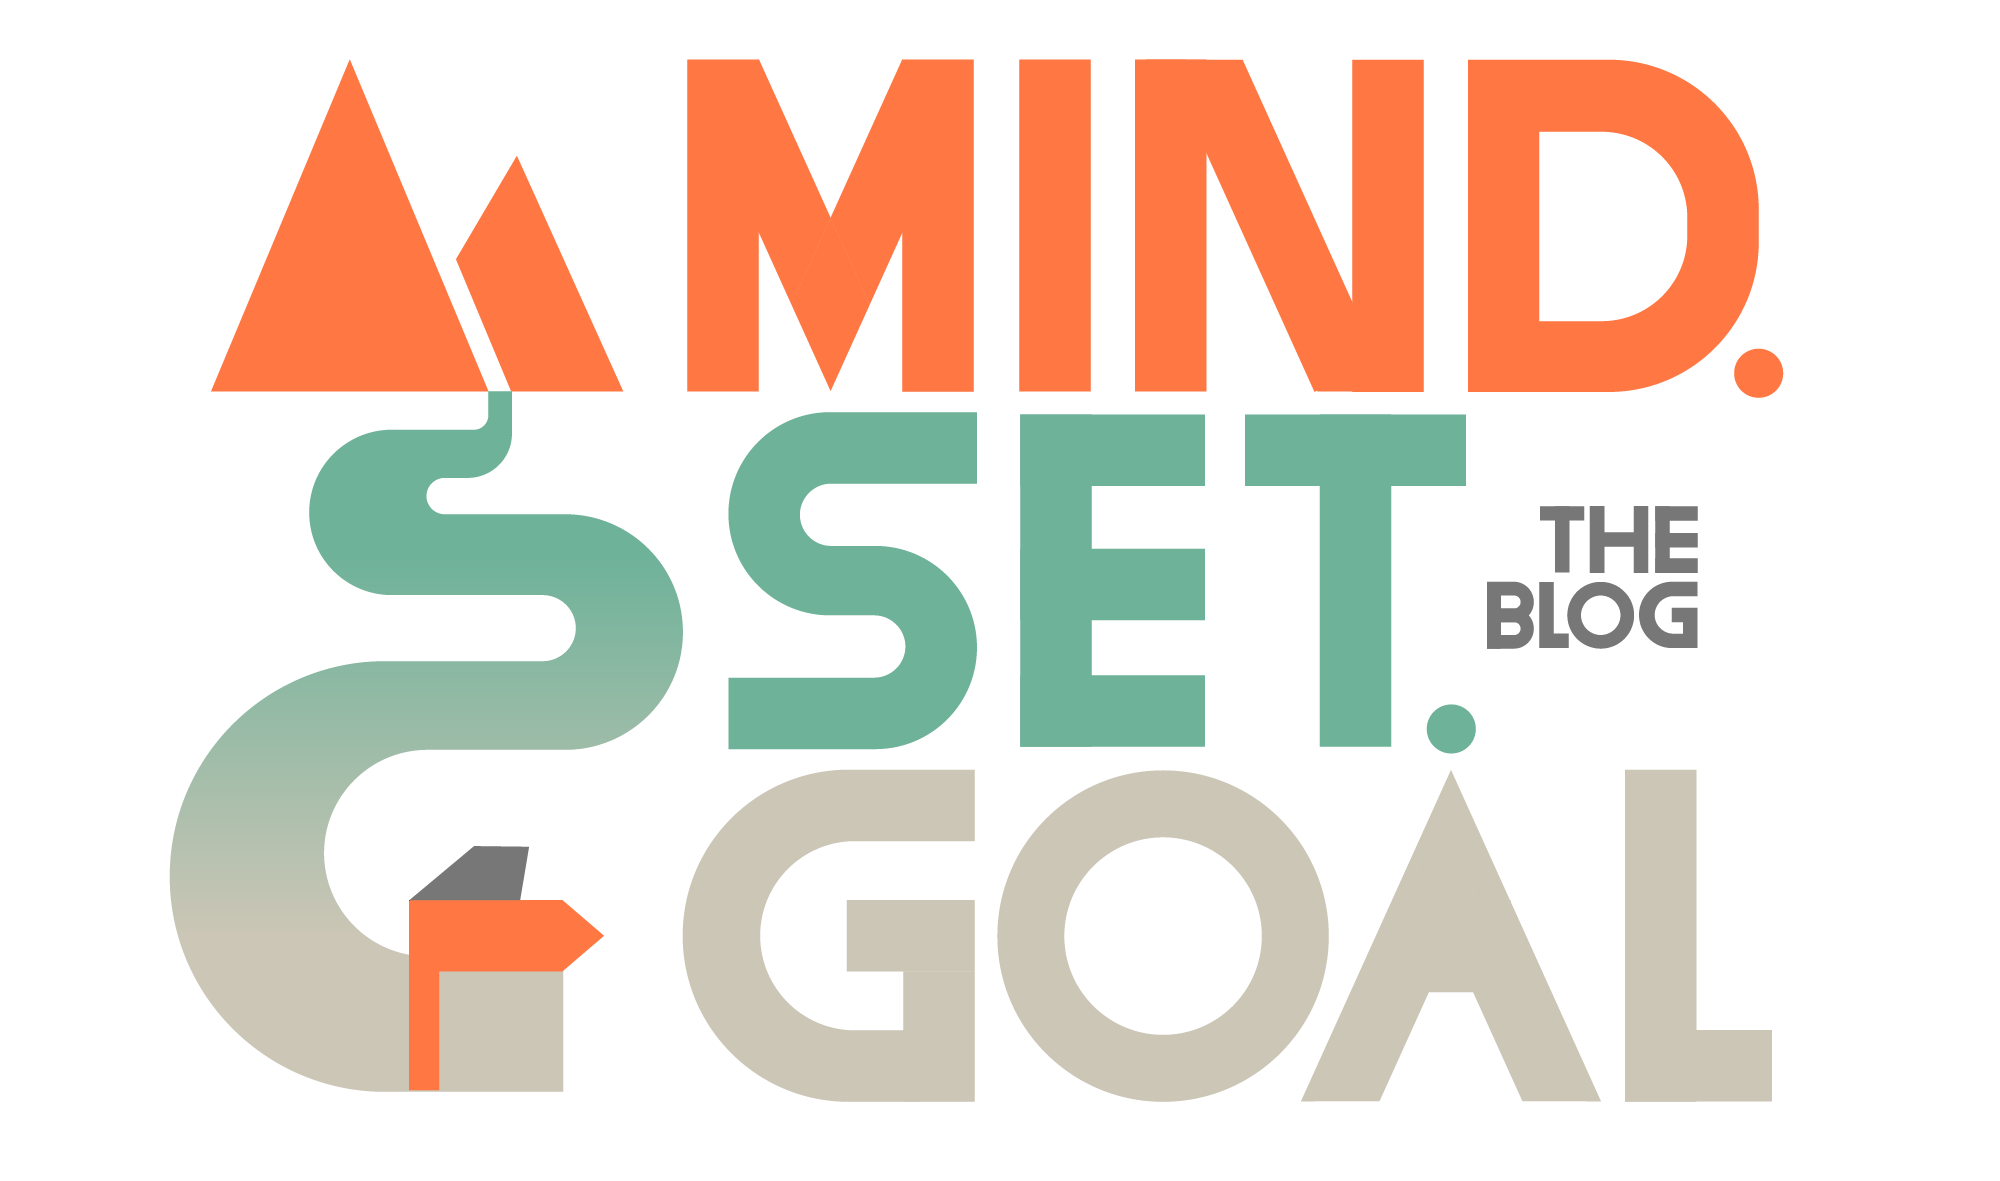 MindSet.Goal